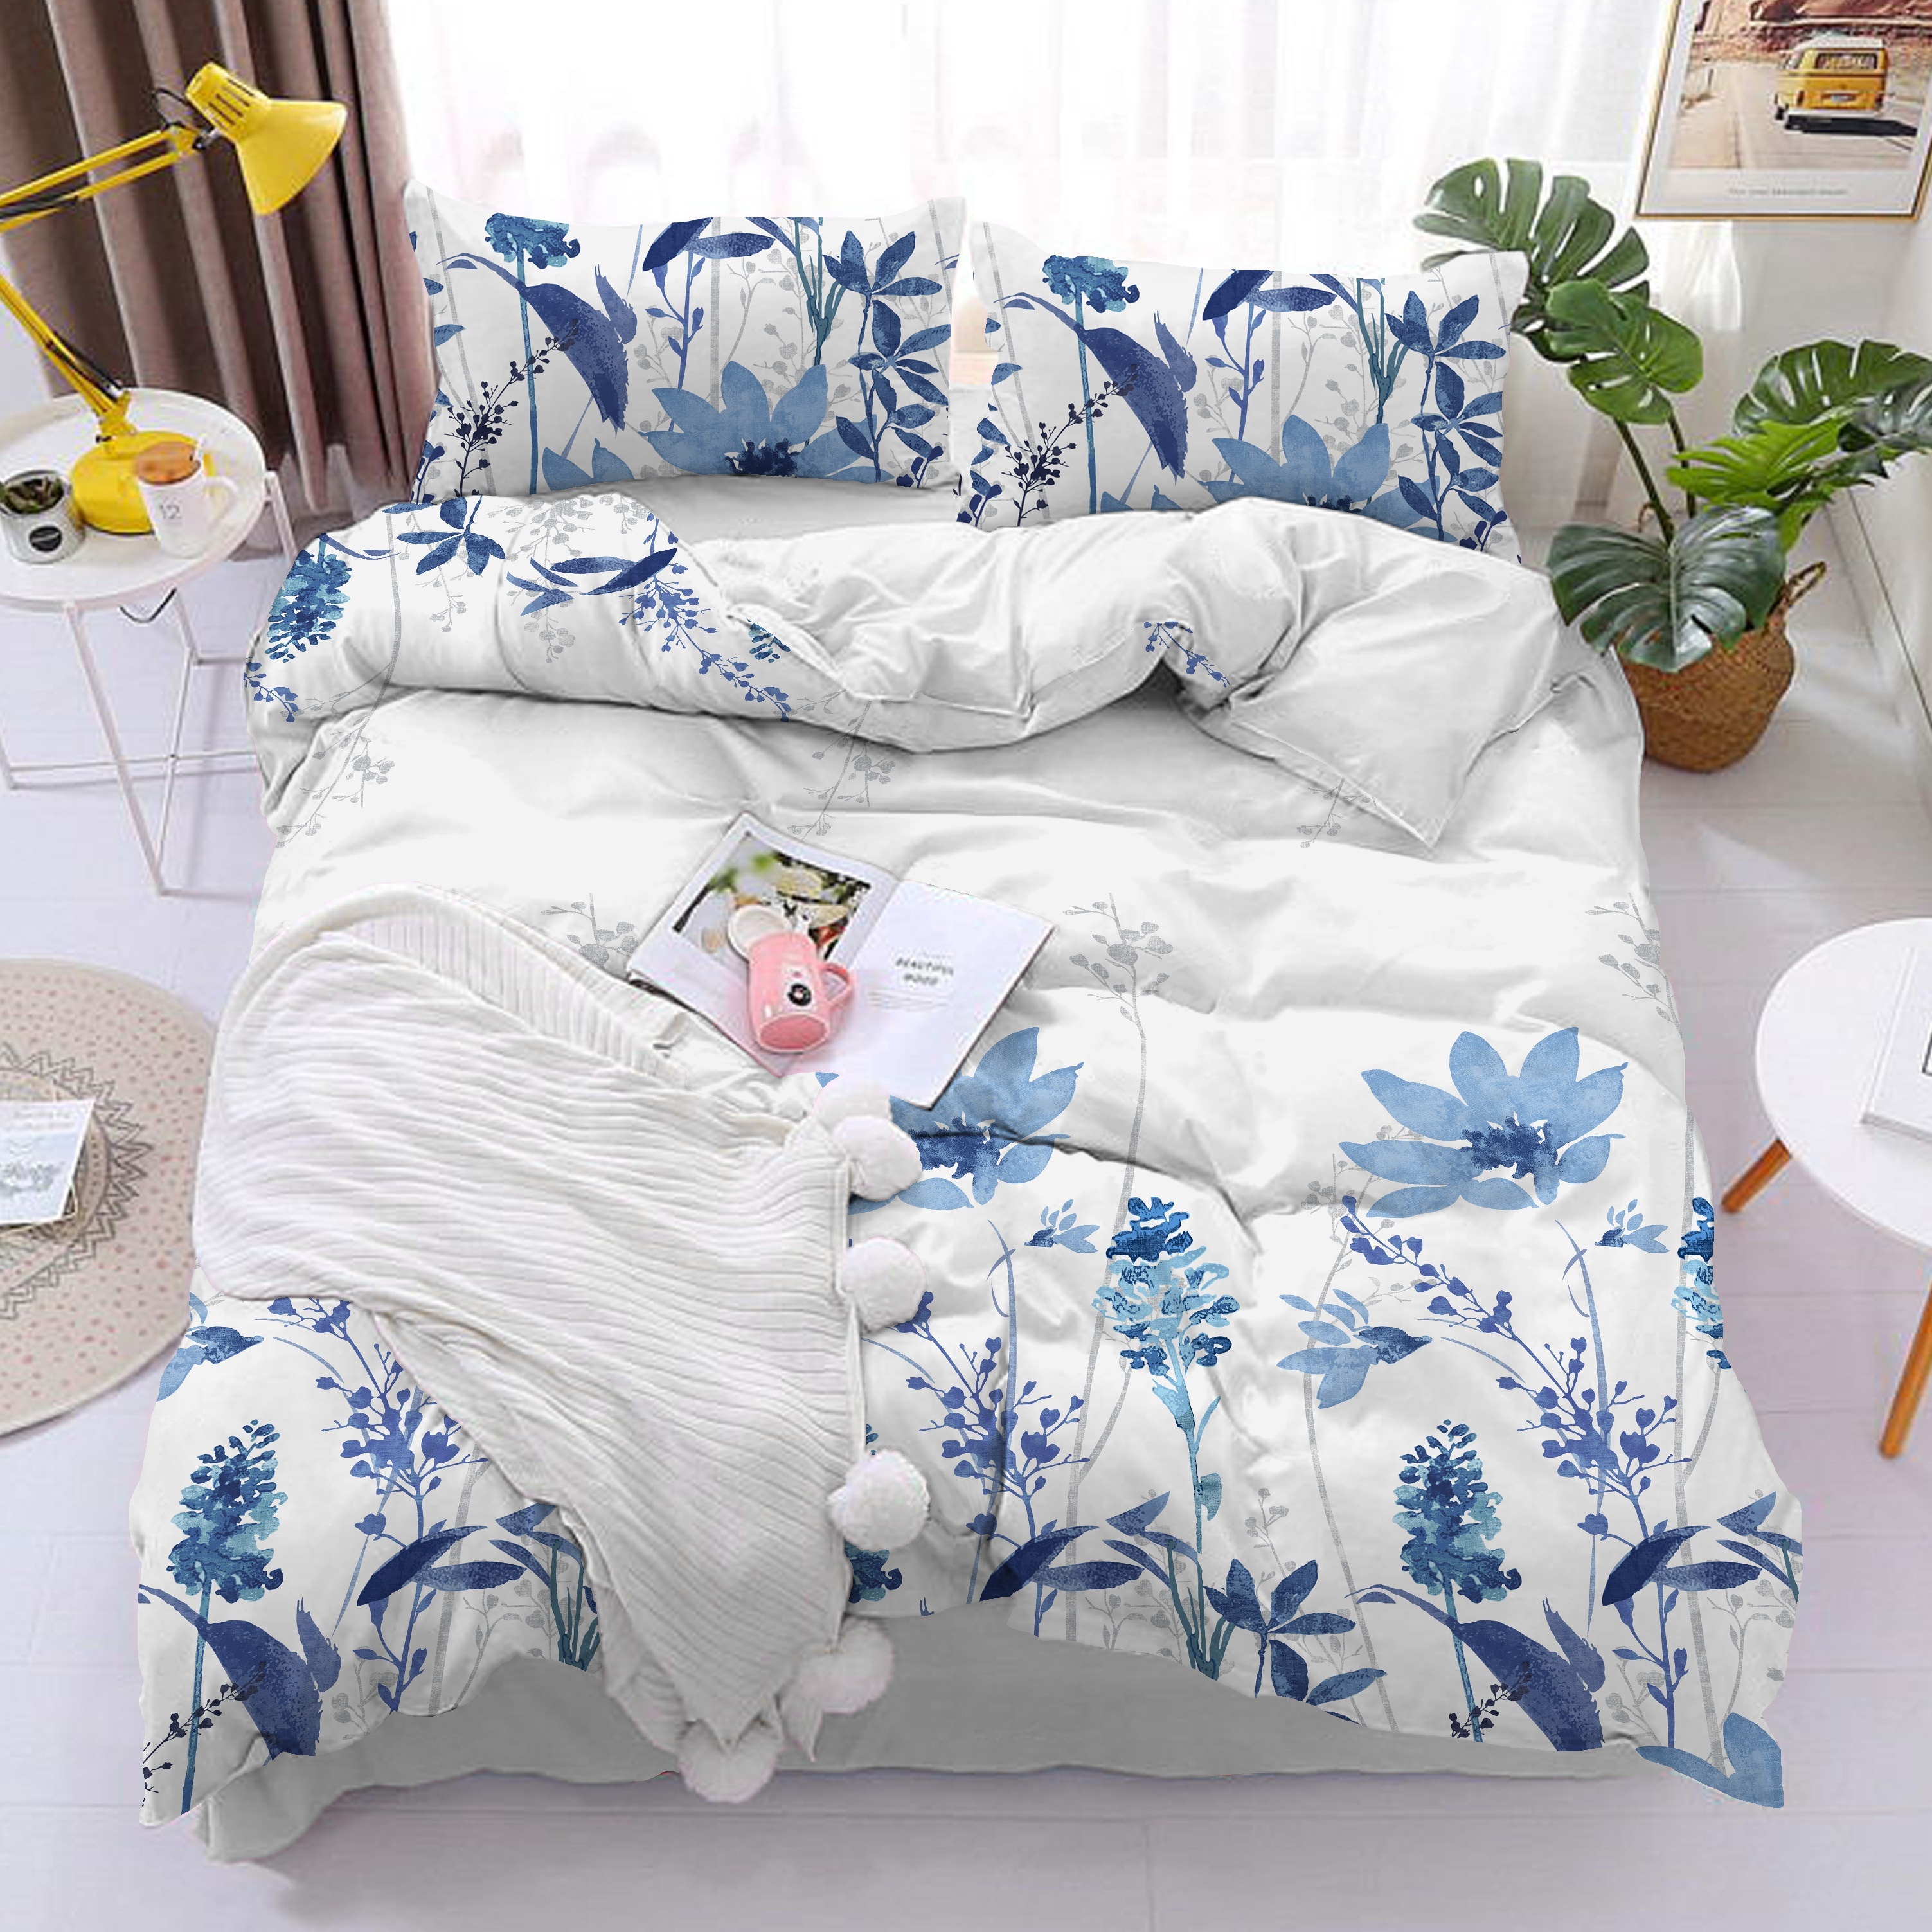 LEONIDAS - Printed cotton quilt set - Boho patchwork. Colour: blue